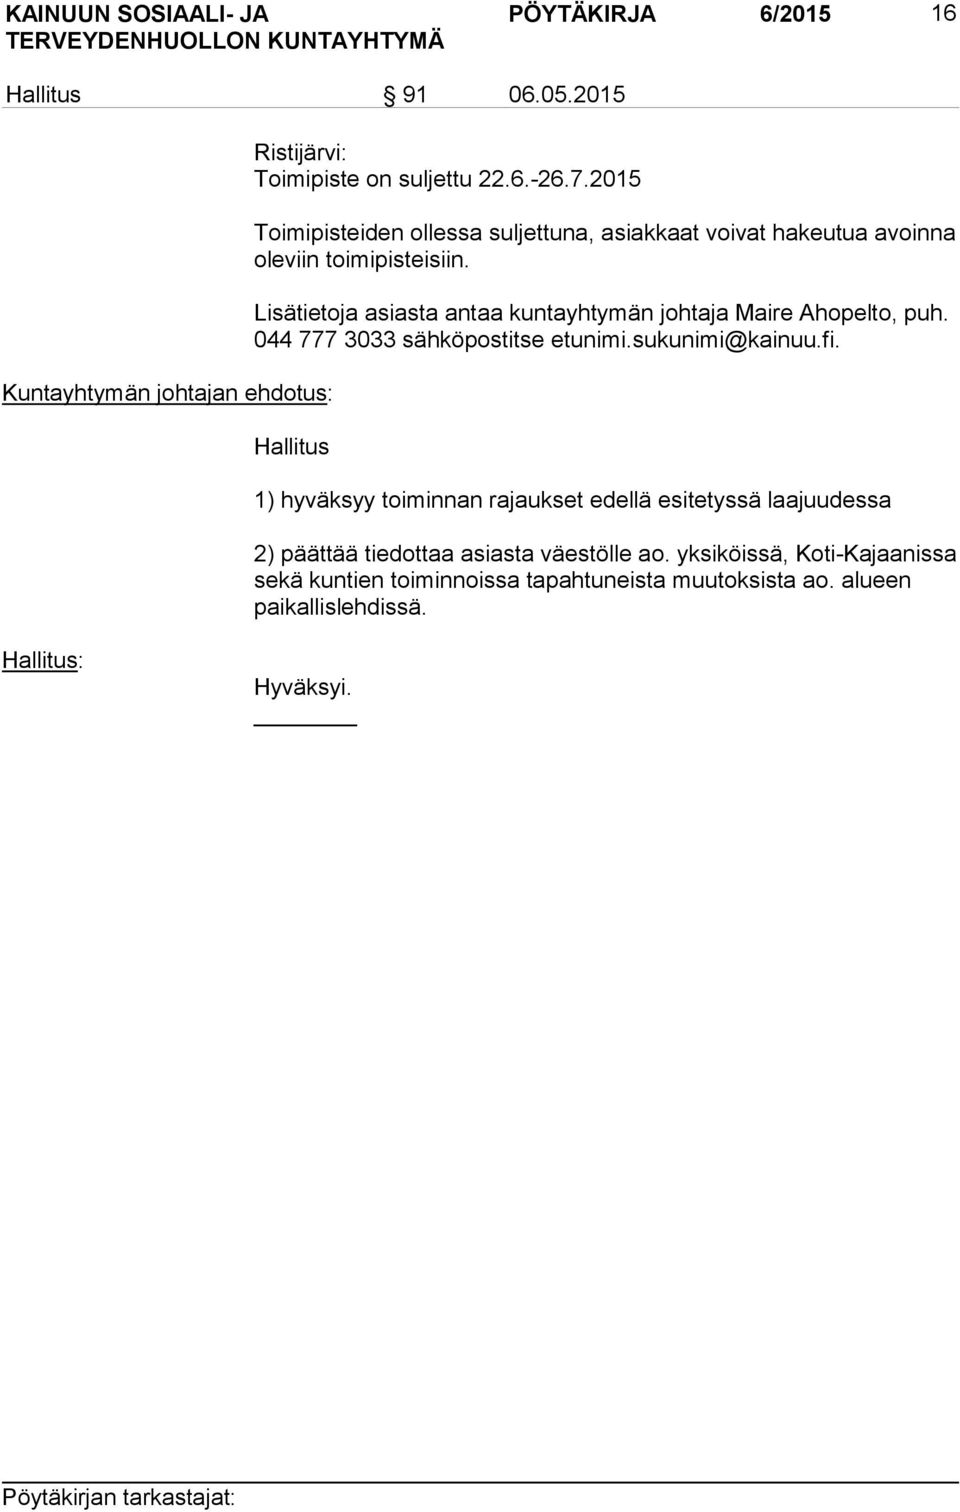 Lisätietoja asiasta antaa kuntayhtymän johtaja Maire Ahopelto, puh. 044 777 3033 sähköpostitse etunimi.sukunimi@kainuu.fi.